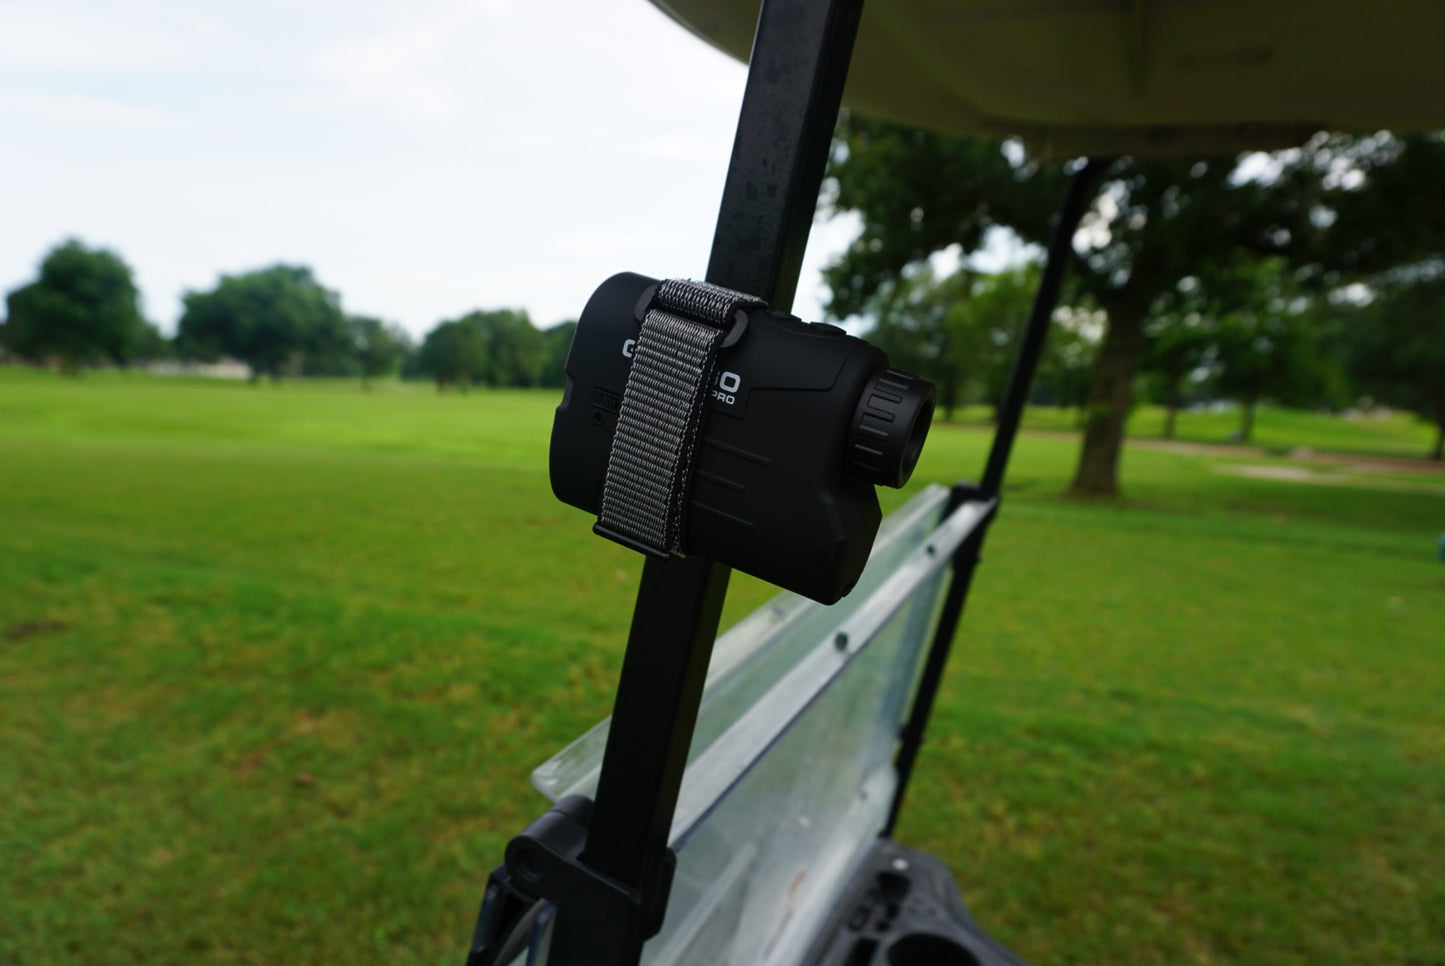  Gogogo Sport Vpro Magnetic Golf Rangefinder Holder Mount  Strap, Adjustable Range Finder Strap Holder Band Fits Most Types, Strong  Magnet for Easily Stick Rangefinder on Golf Cart/Bar/Club (Black) : Sports